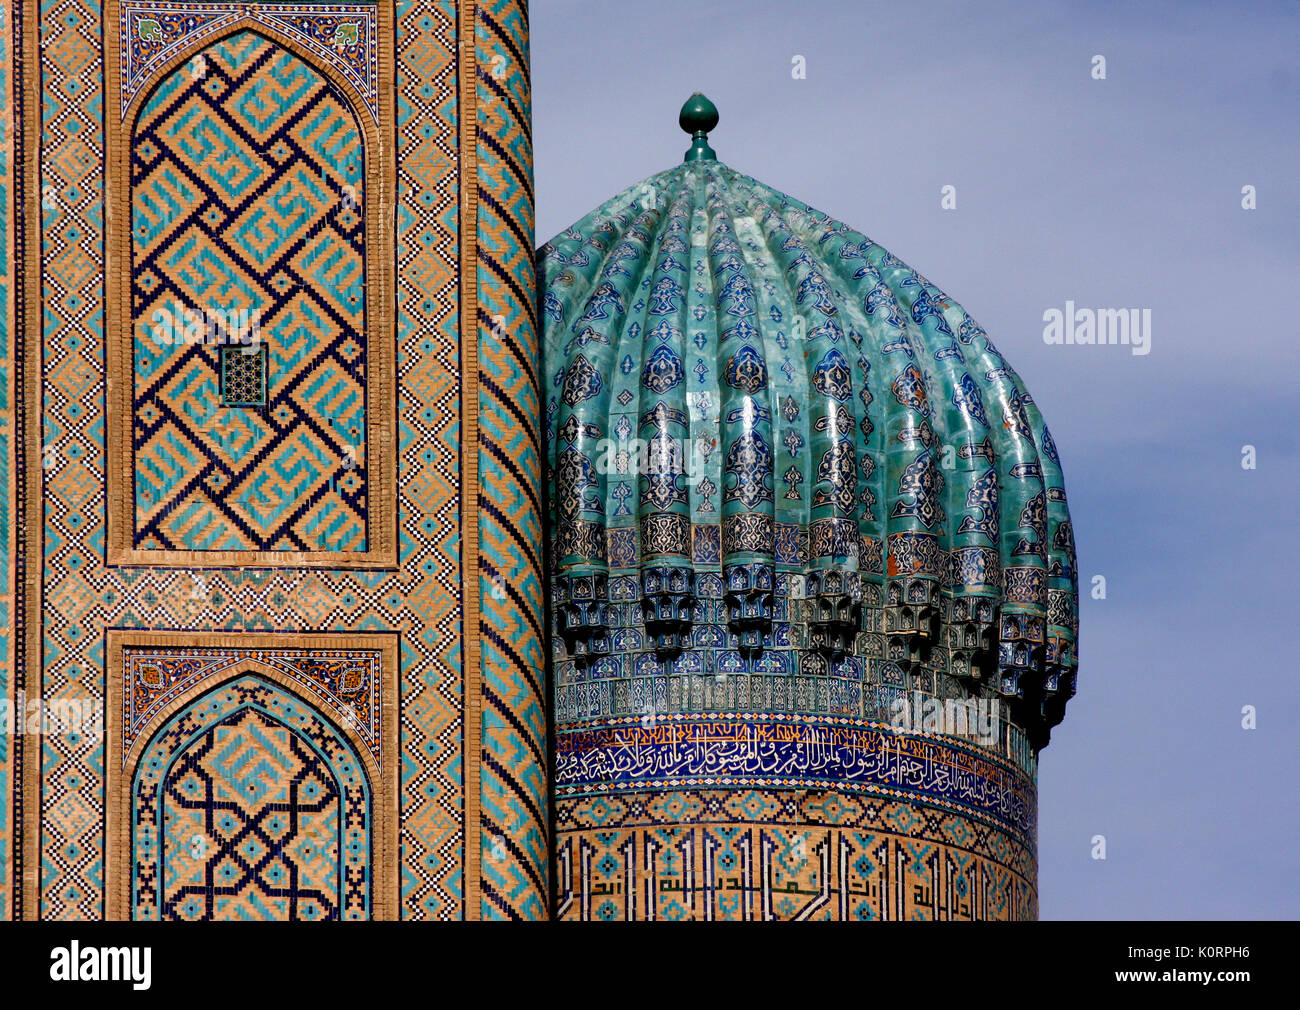 Kuppel des Shir Dor Madrassa, Teil der Registan, Samarkand, Usbekistan. 17. Jahrhundert AD. Traditionelle Zentrum des öffentlichen Lebens. 2011 Stockfoto